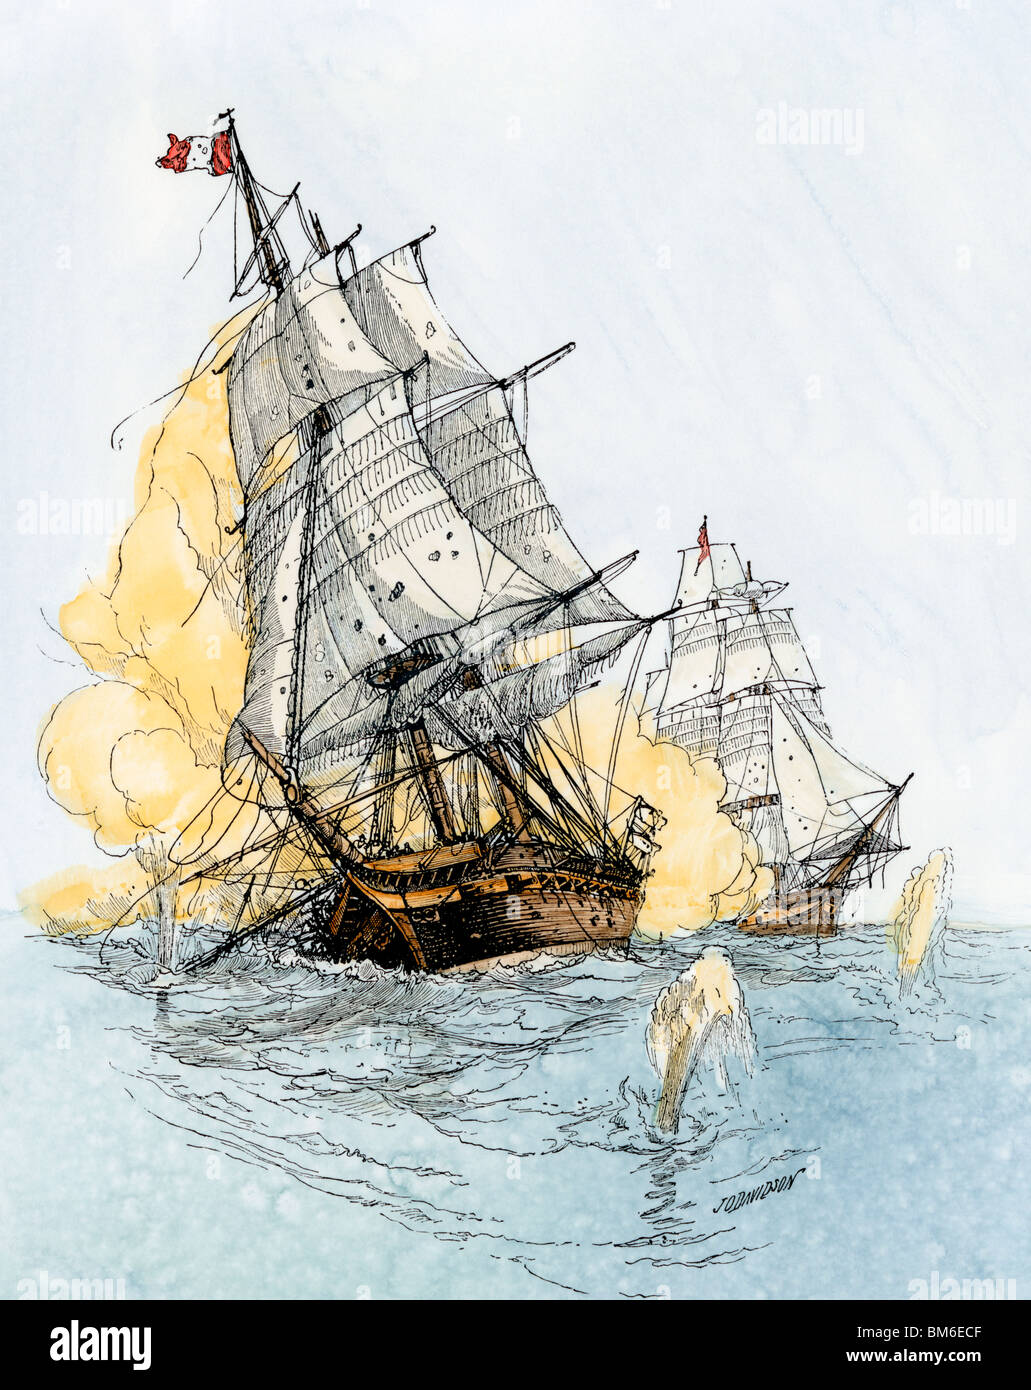 Nave americana "Boston" sparando sull 'Le Berceau" in un sommerso guerra navale con la Francia, 1800. Colorate a mano la xilografia Foto Stock